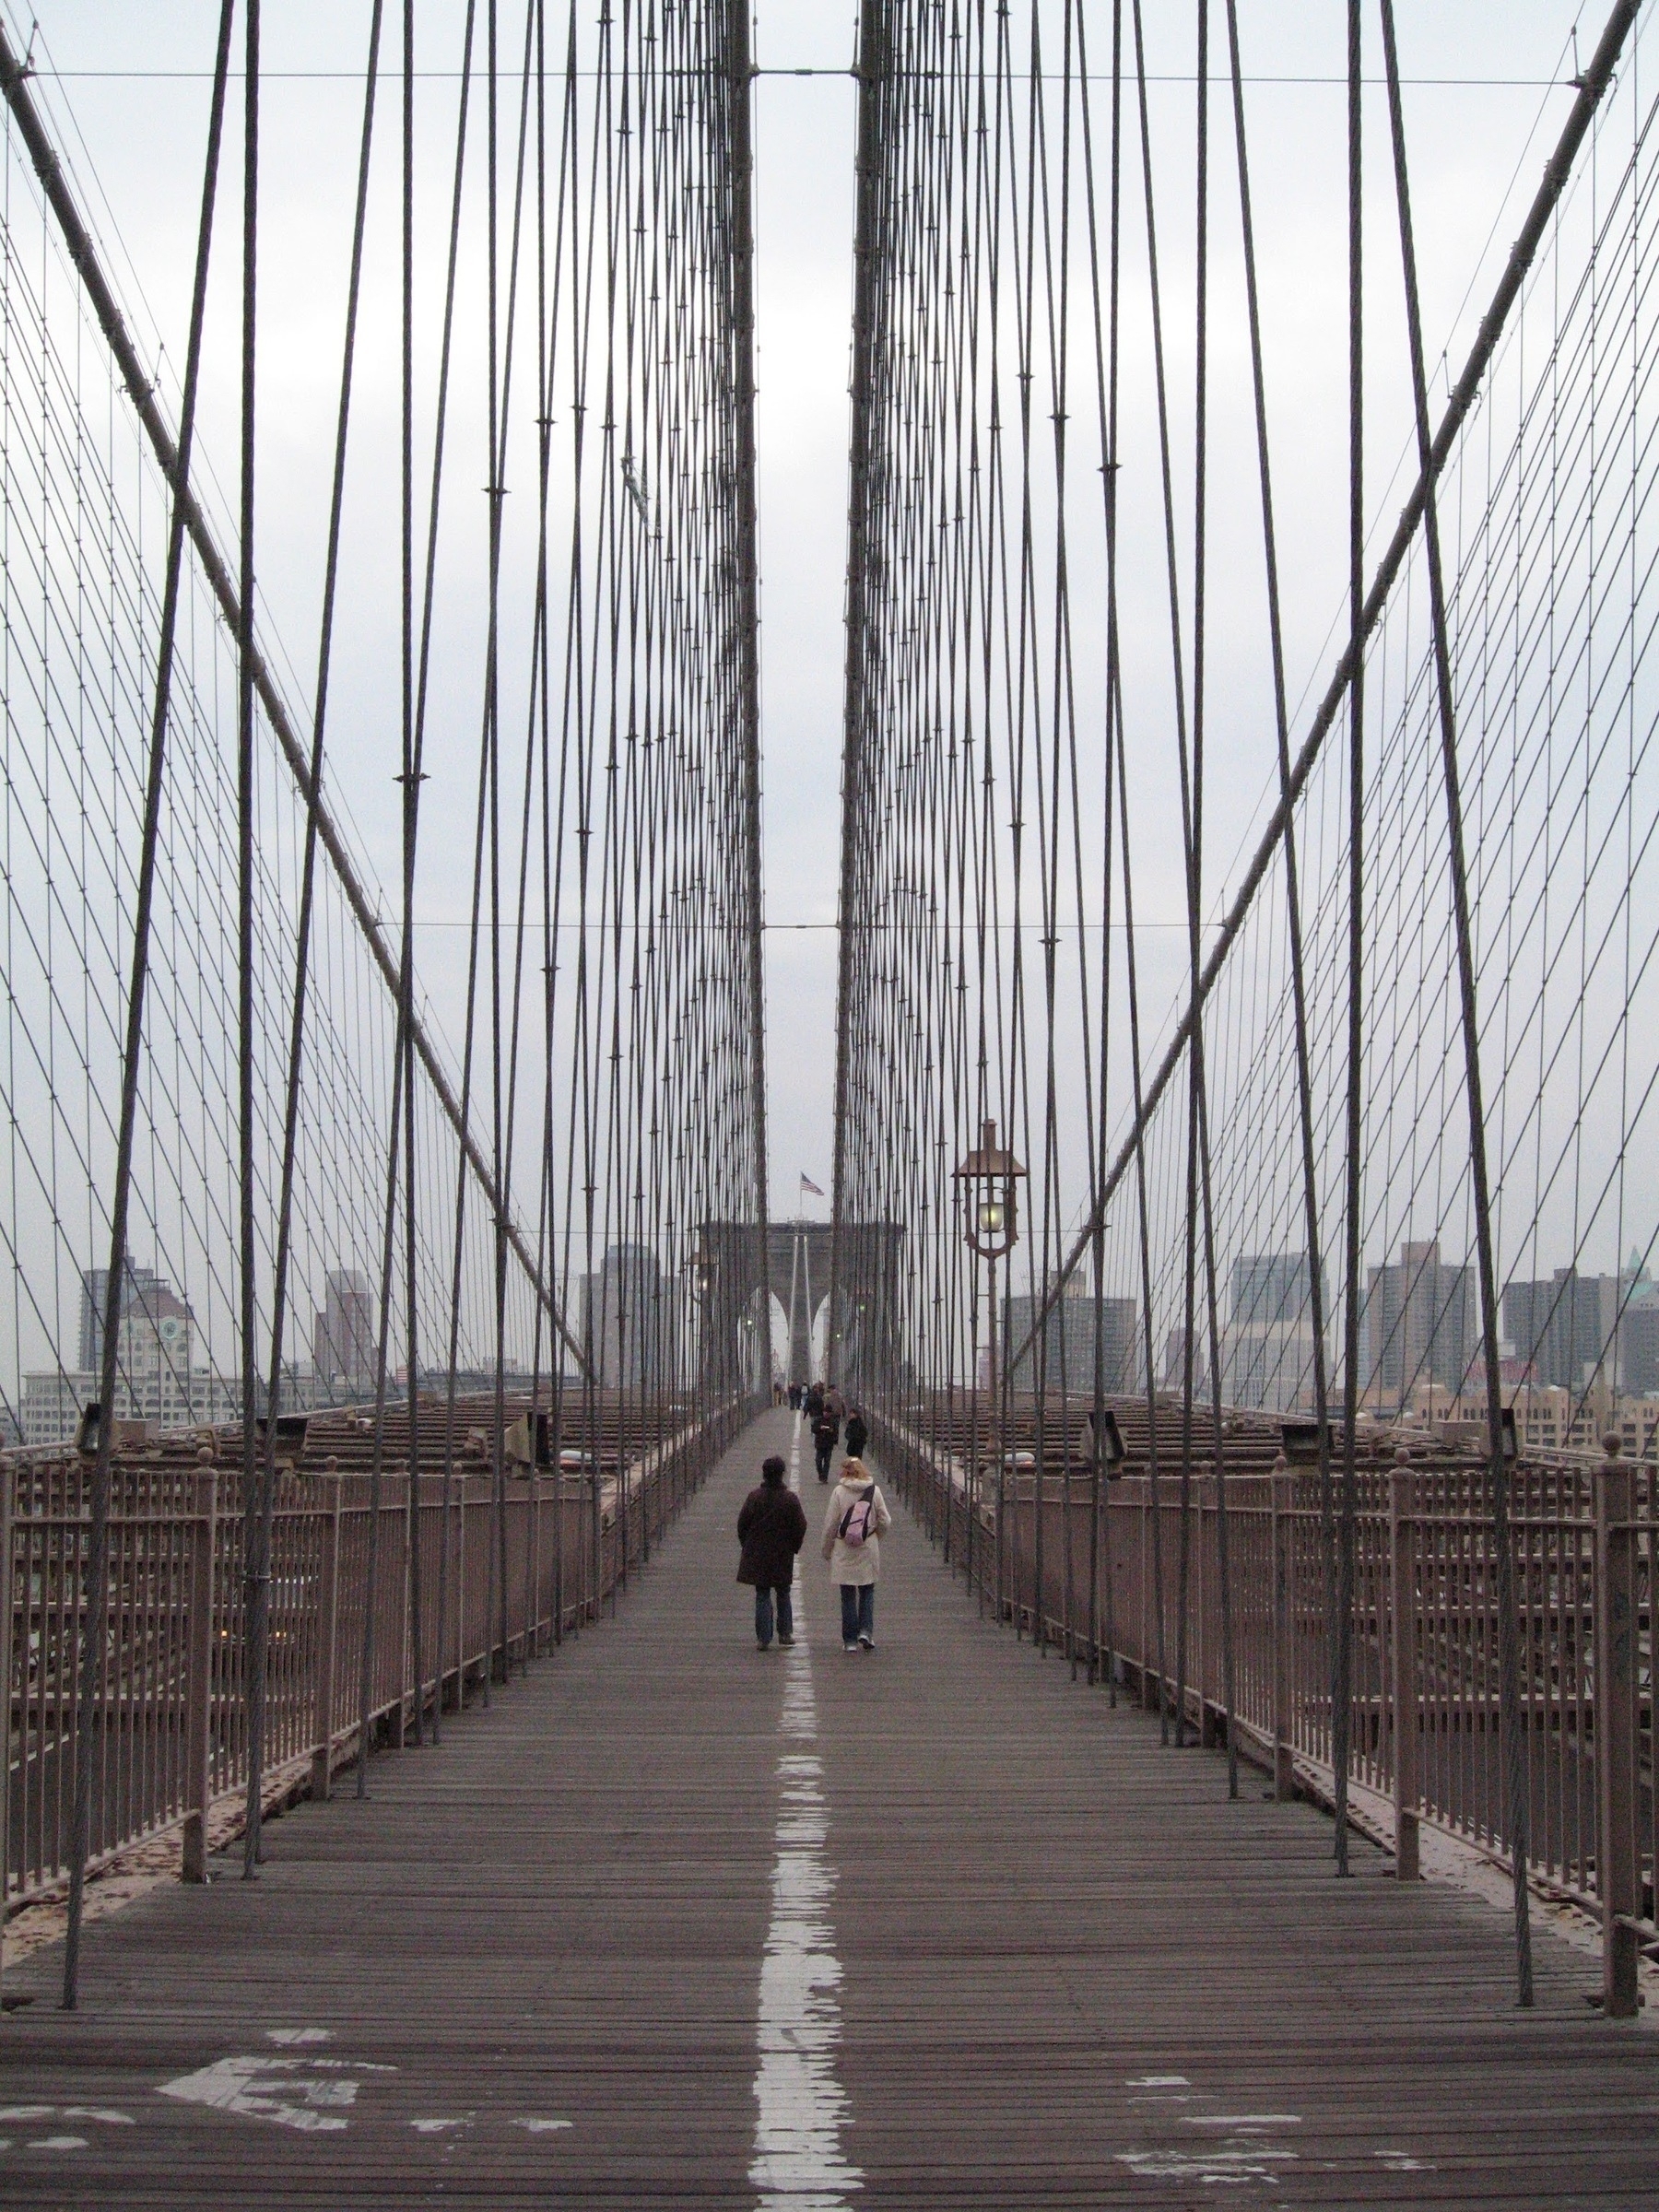 It's the Brooklyn Bridge!